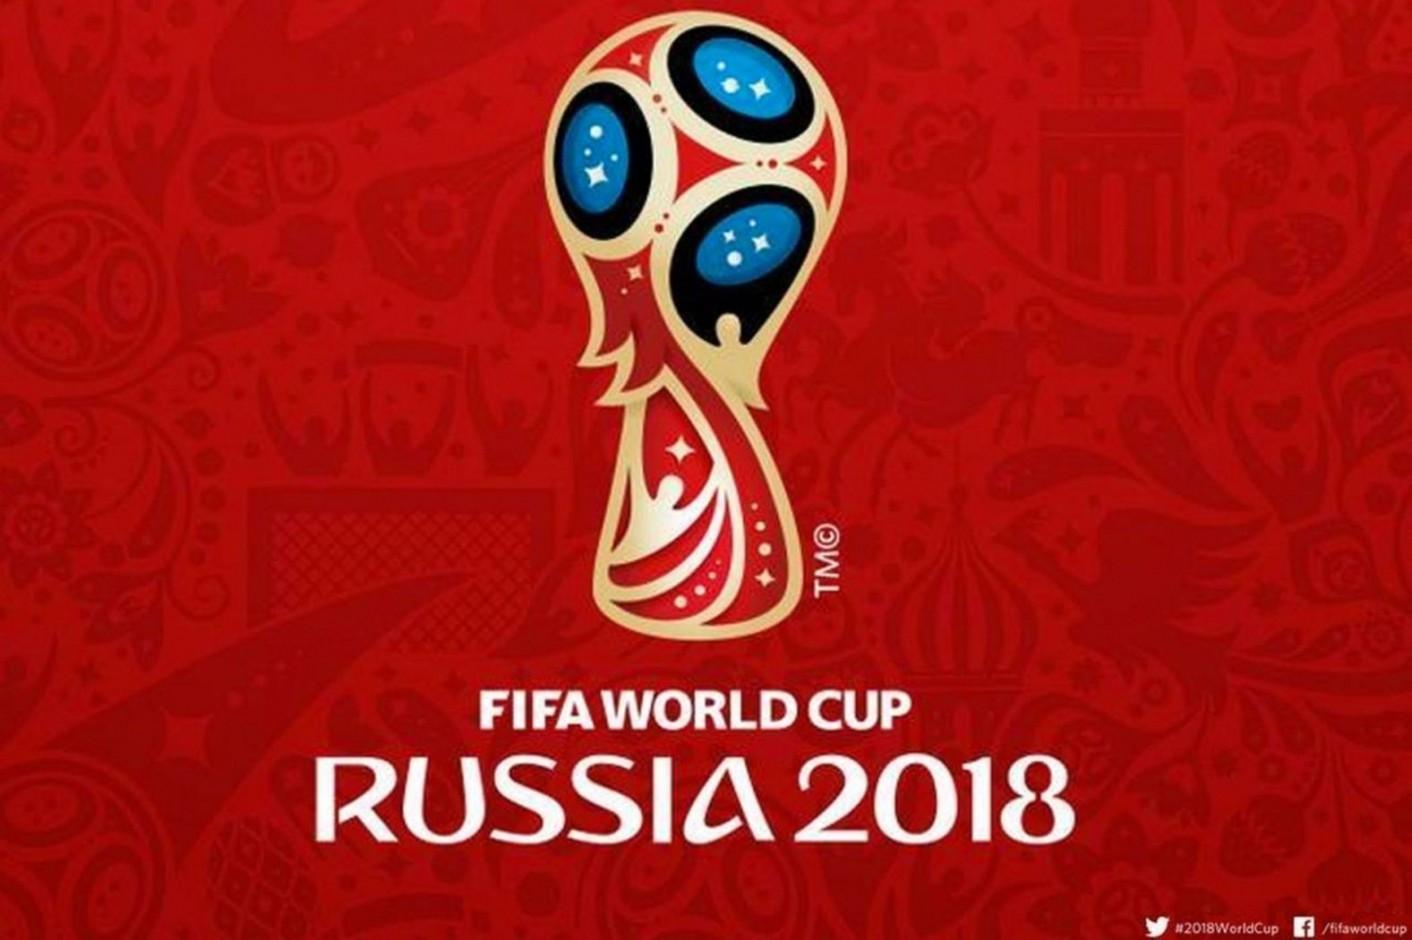 Mondiali Russia 2018: secondo le statistiche le favorite sono nove